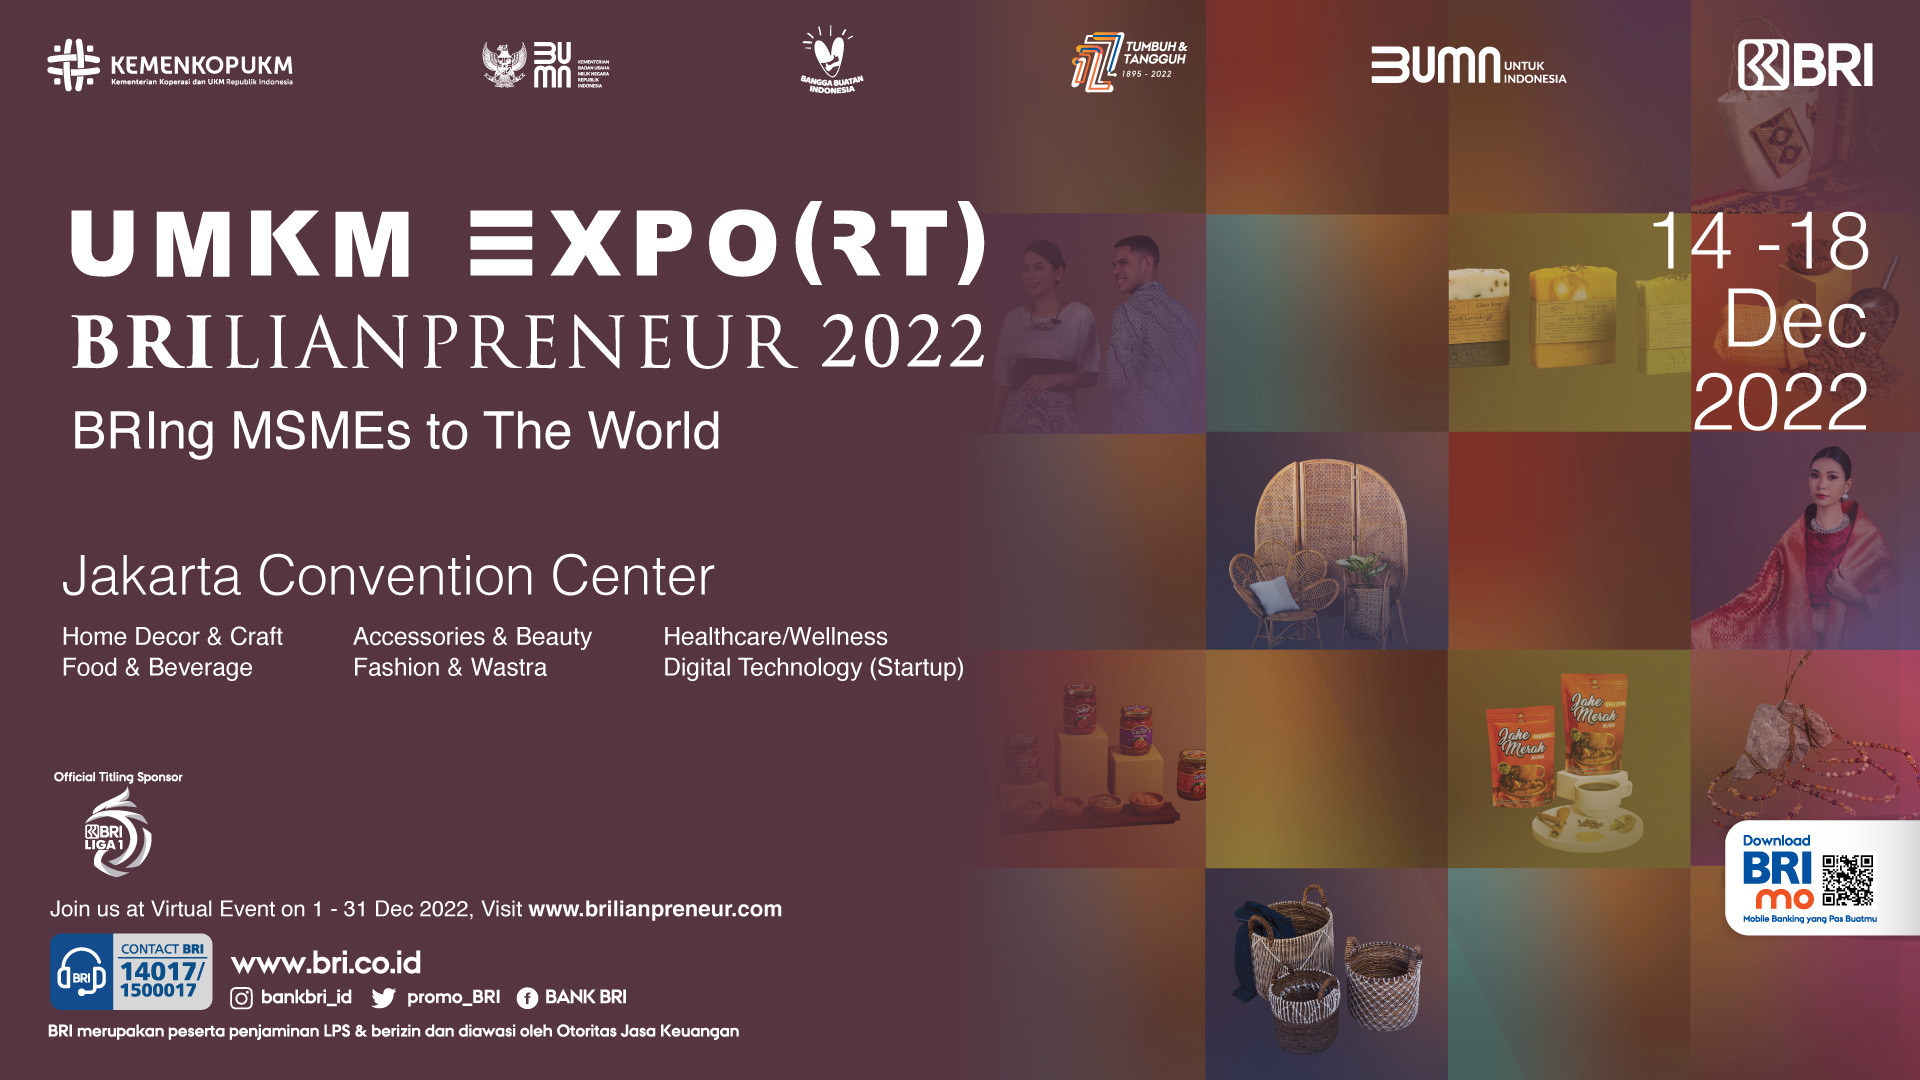 Indonésie na cestě k udržitelnosti: UMKM EXPO(RT) BRILIANPRENEUR 2022 představuje 500 vybraných mikro, malých a středních podniků